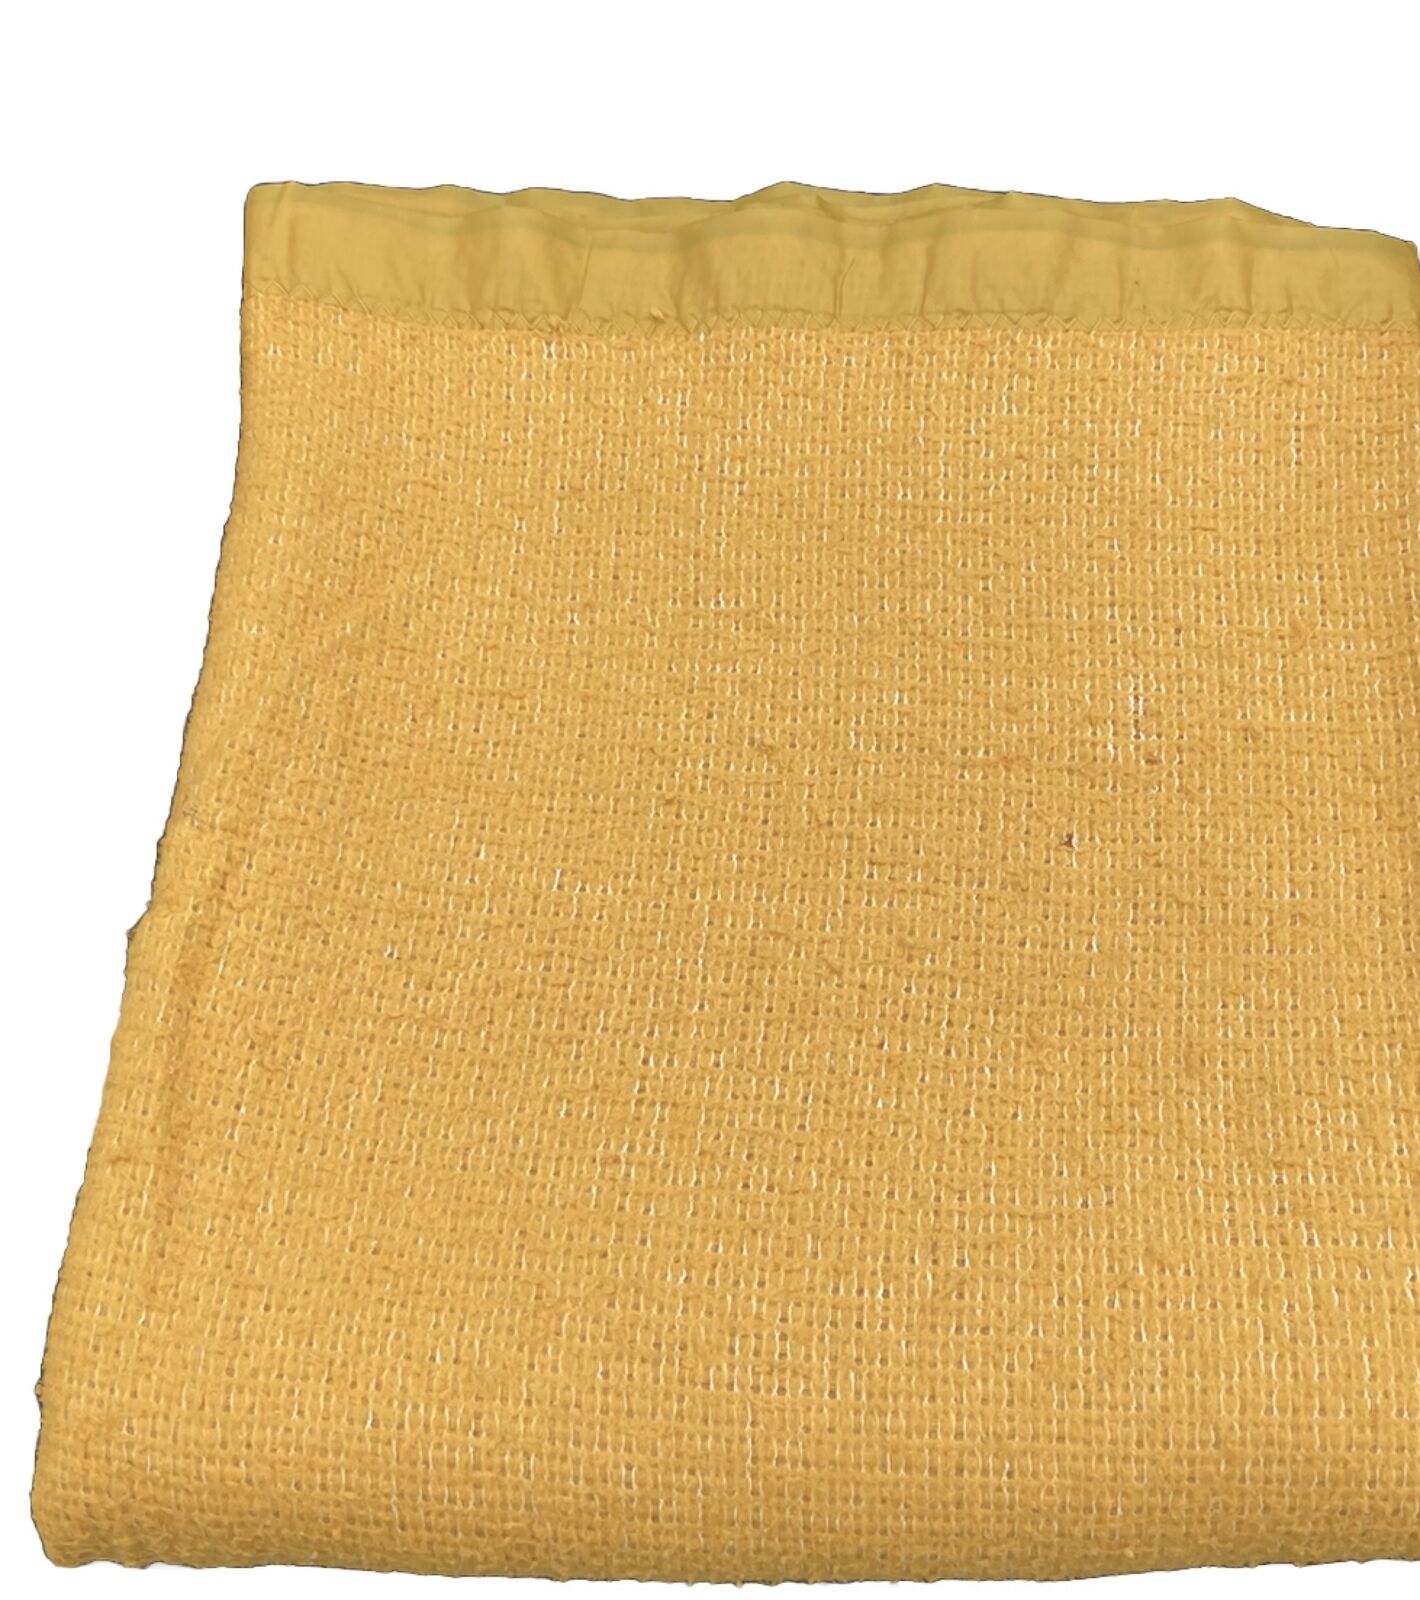 Vintage Yellow Waffle Knit Blanket   54x74\' Full Size One Tiny Hole